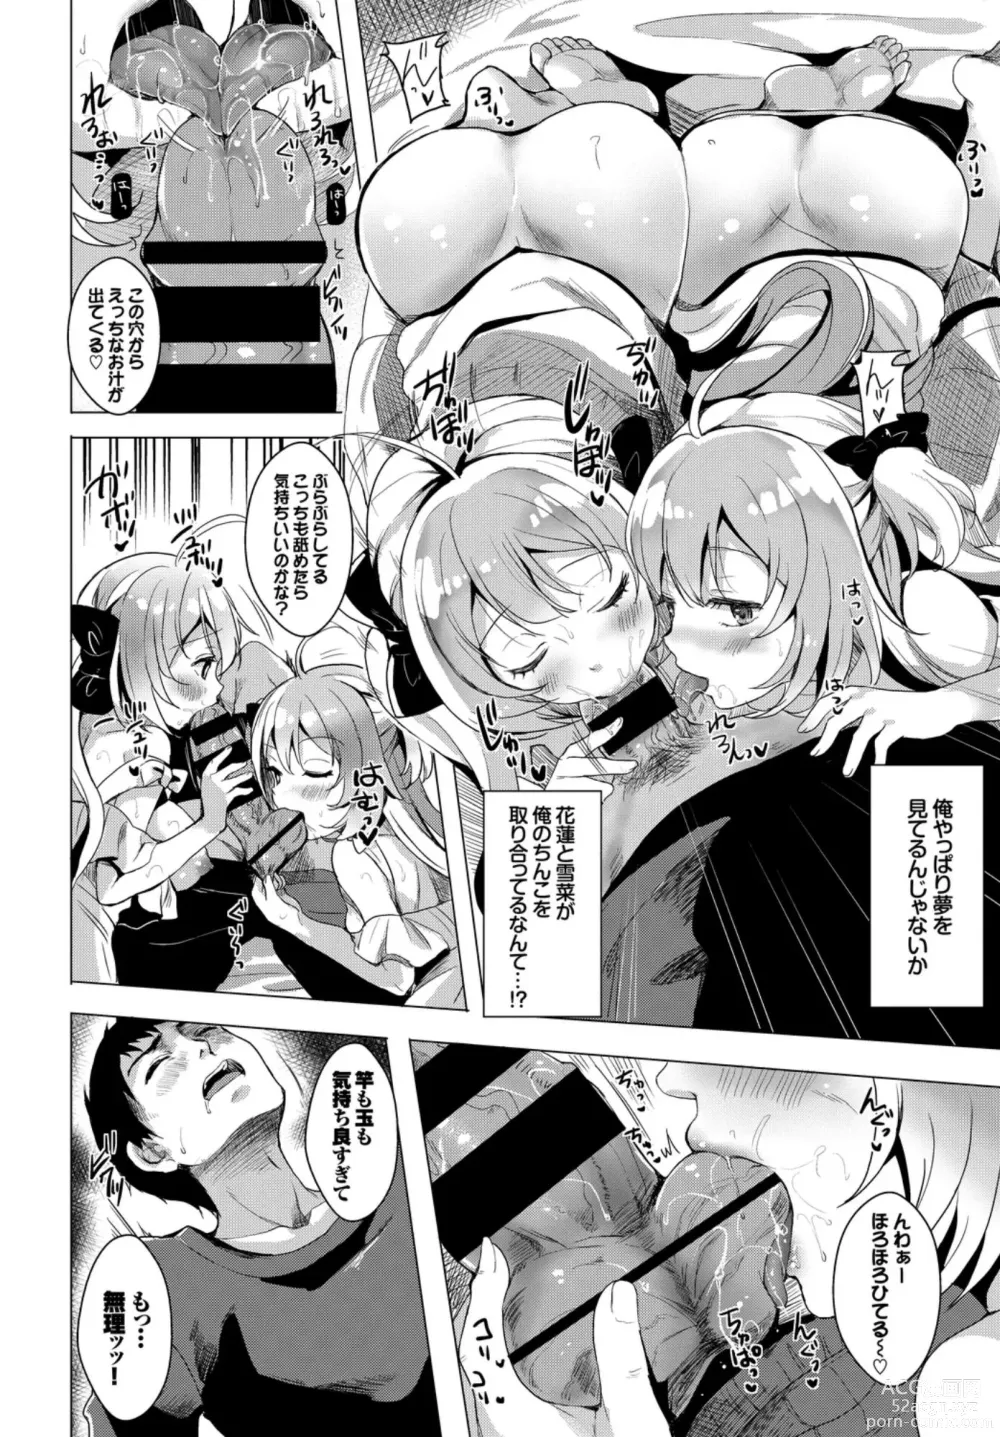 Page 96 of manga Oppai Sand de Shouten Shichao VOL. 2 ~Futago Hen~